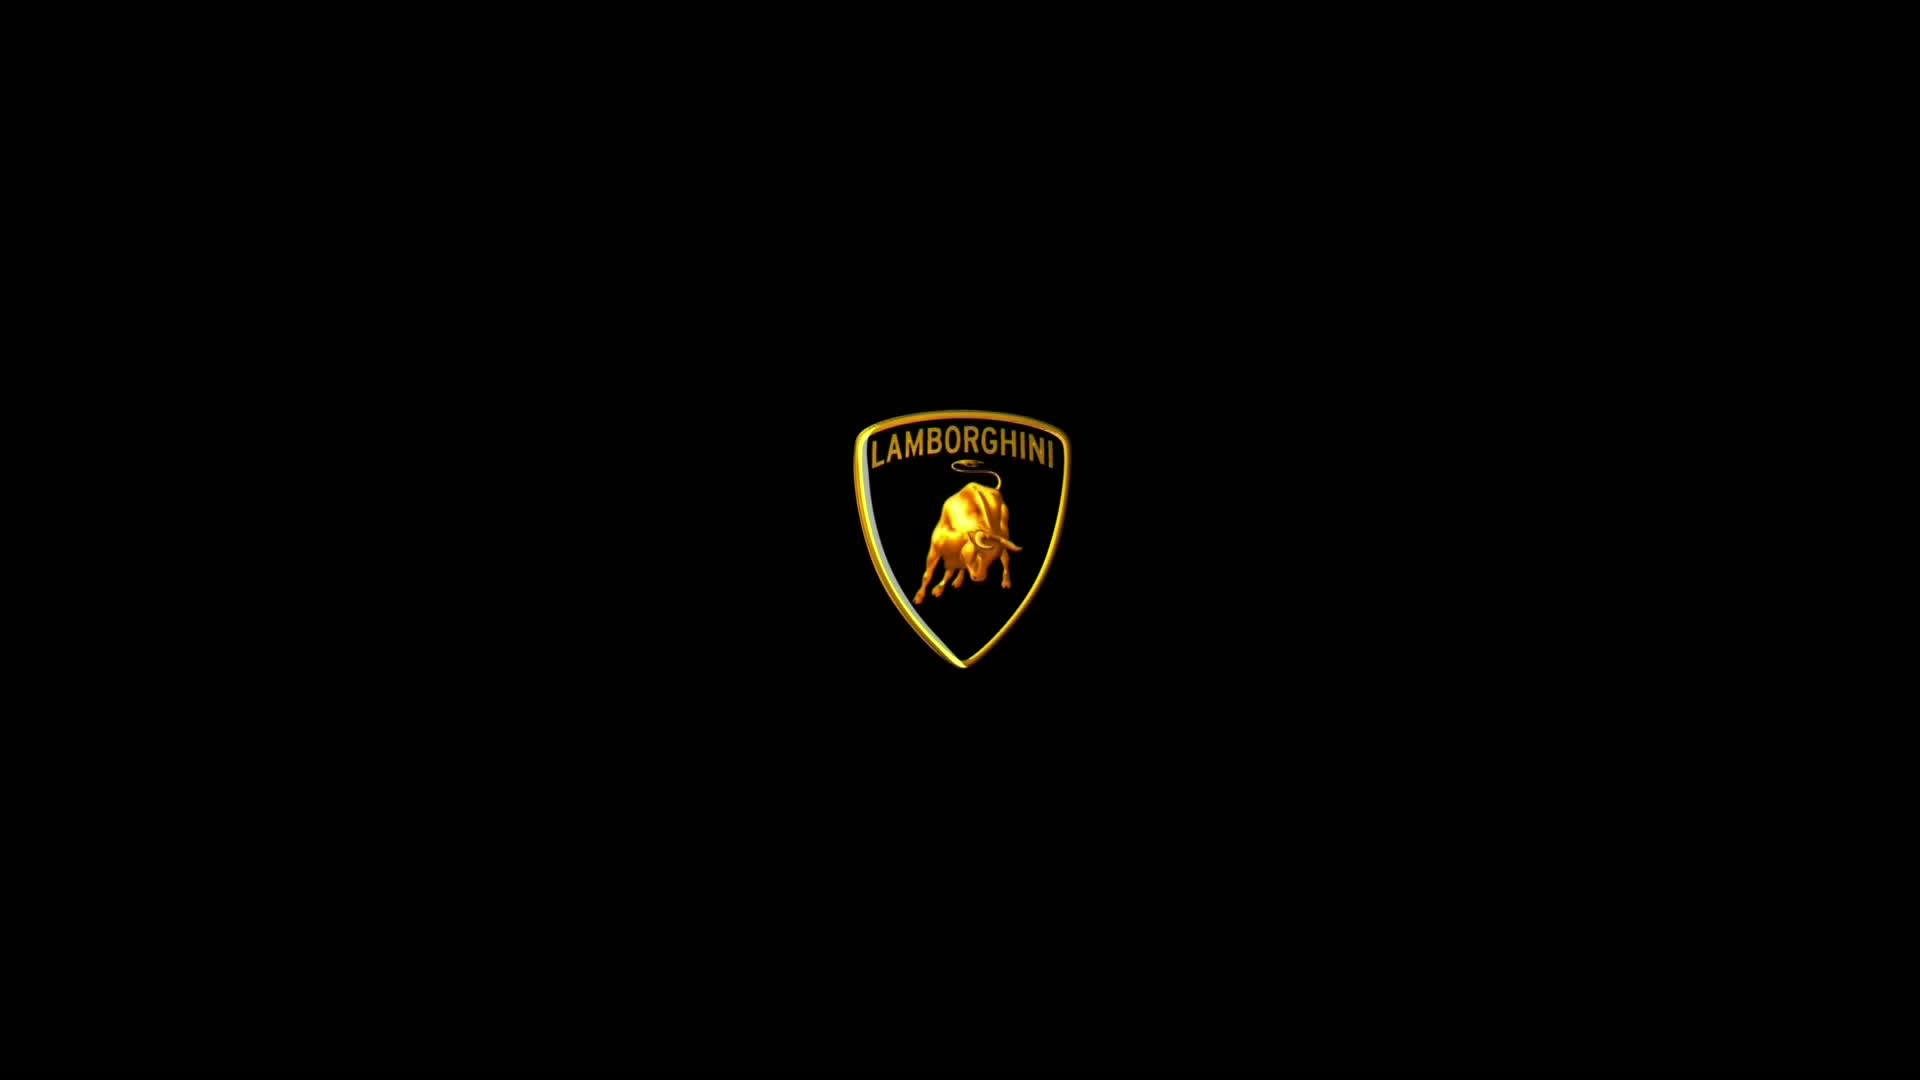 Black Lamborghini Car Hd Wallpaper